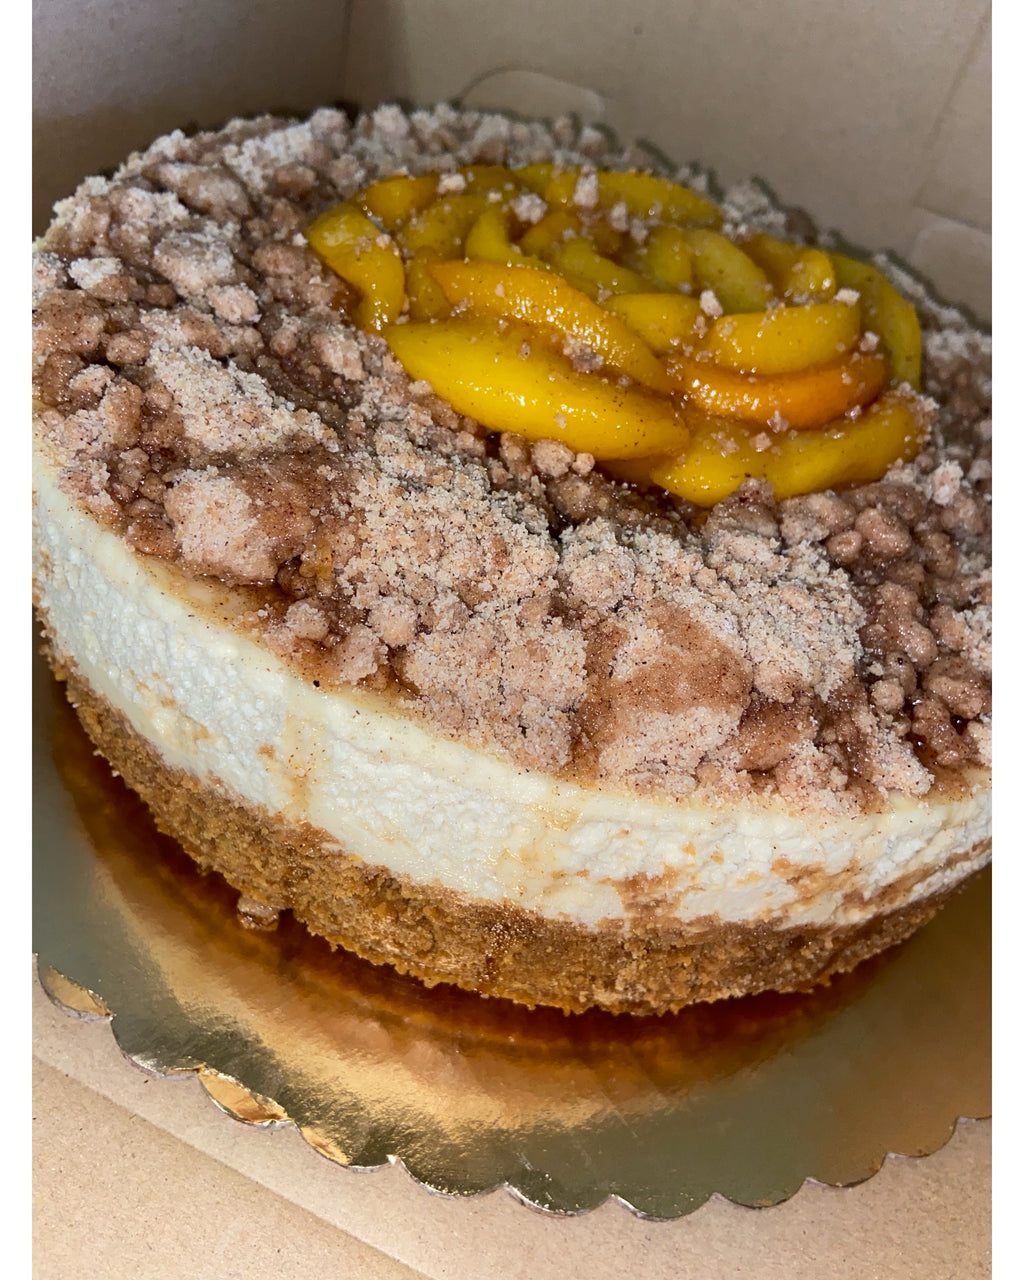 Peach Cobbler Cheesecake